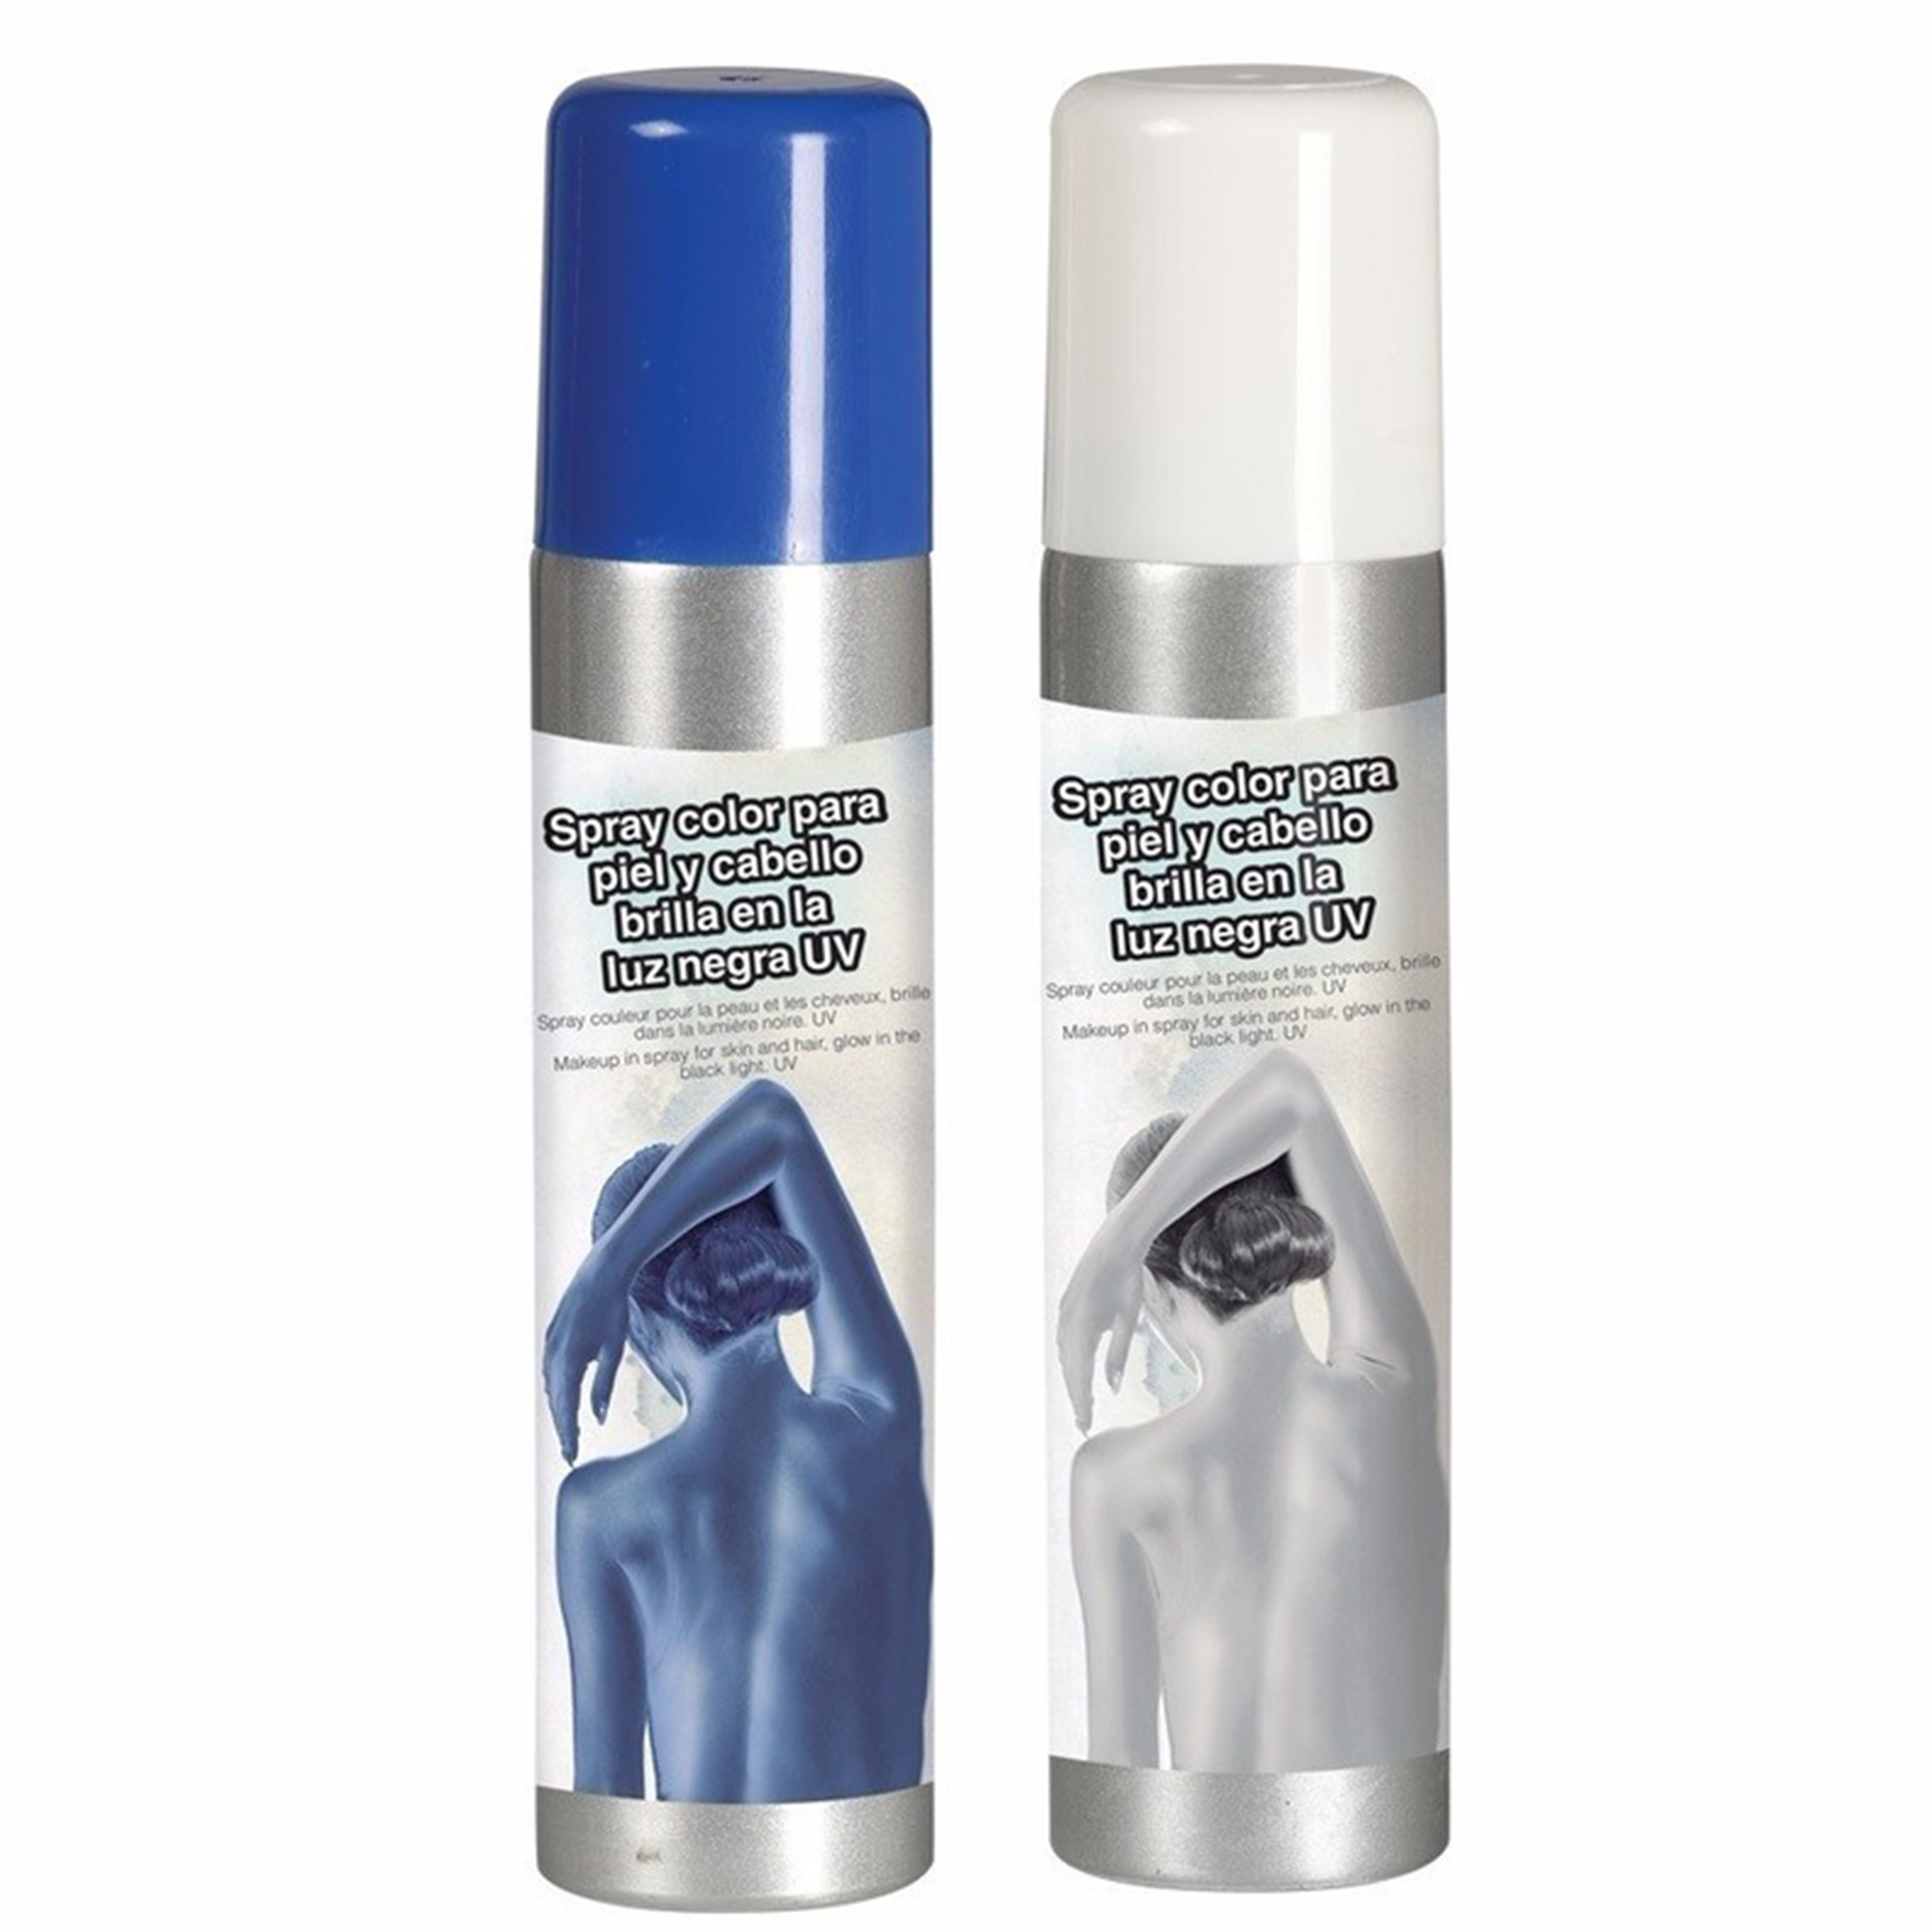 Guirca Haarspray-bodypaint spray 2x kleuren wit en blauw 75 ml